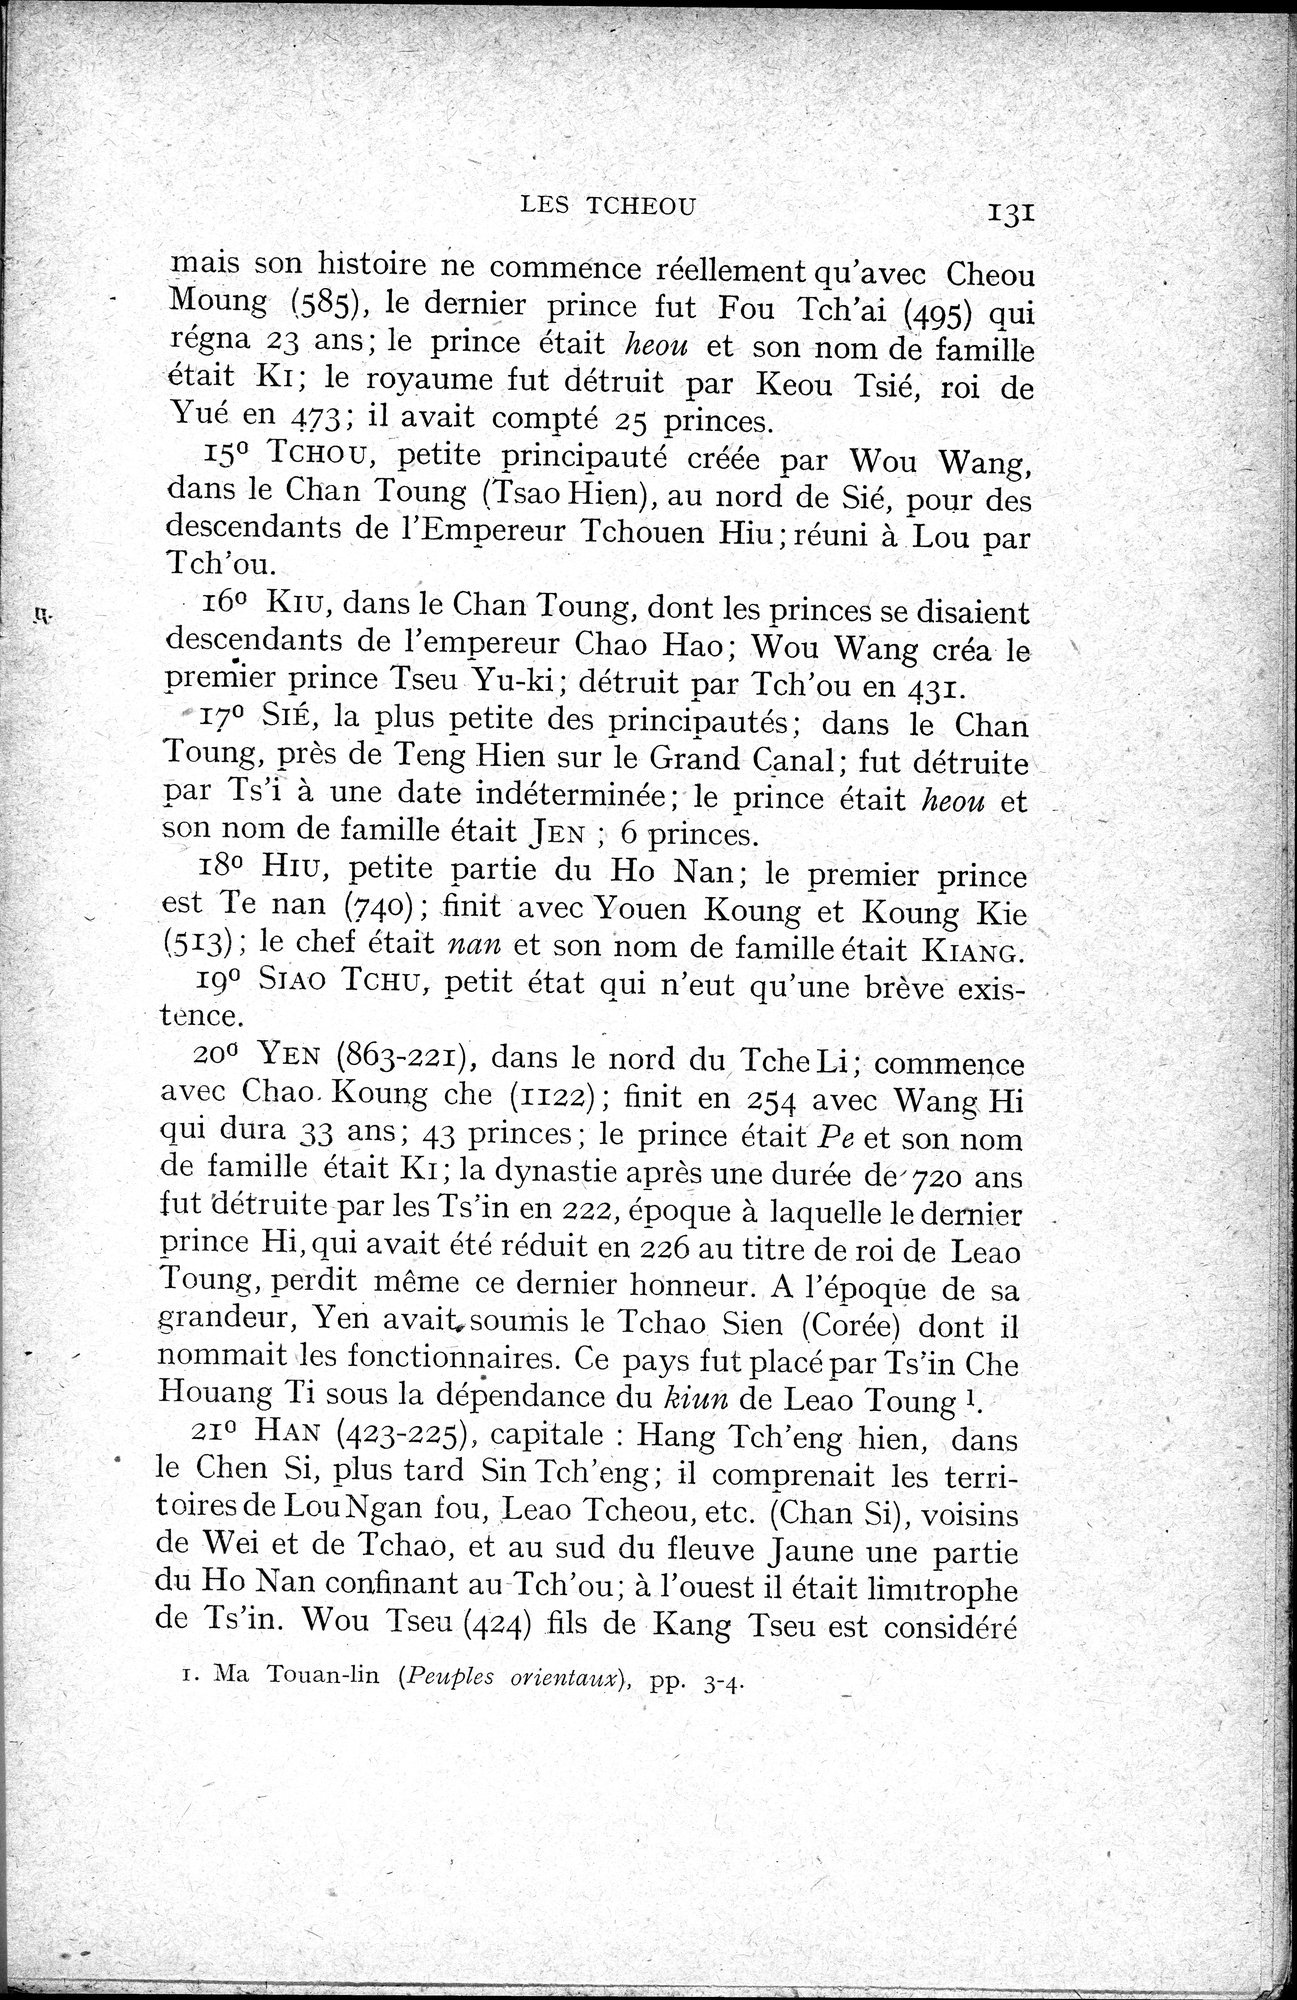 Histoire Générale de la Chine : vol.1 / Page 133 (Grayscale High Resolution Image)